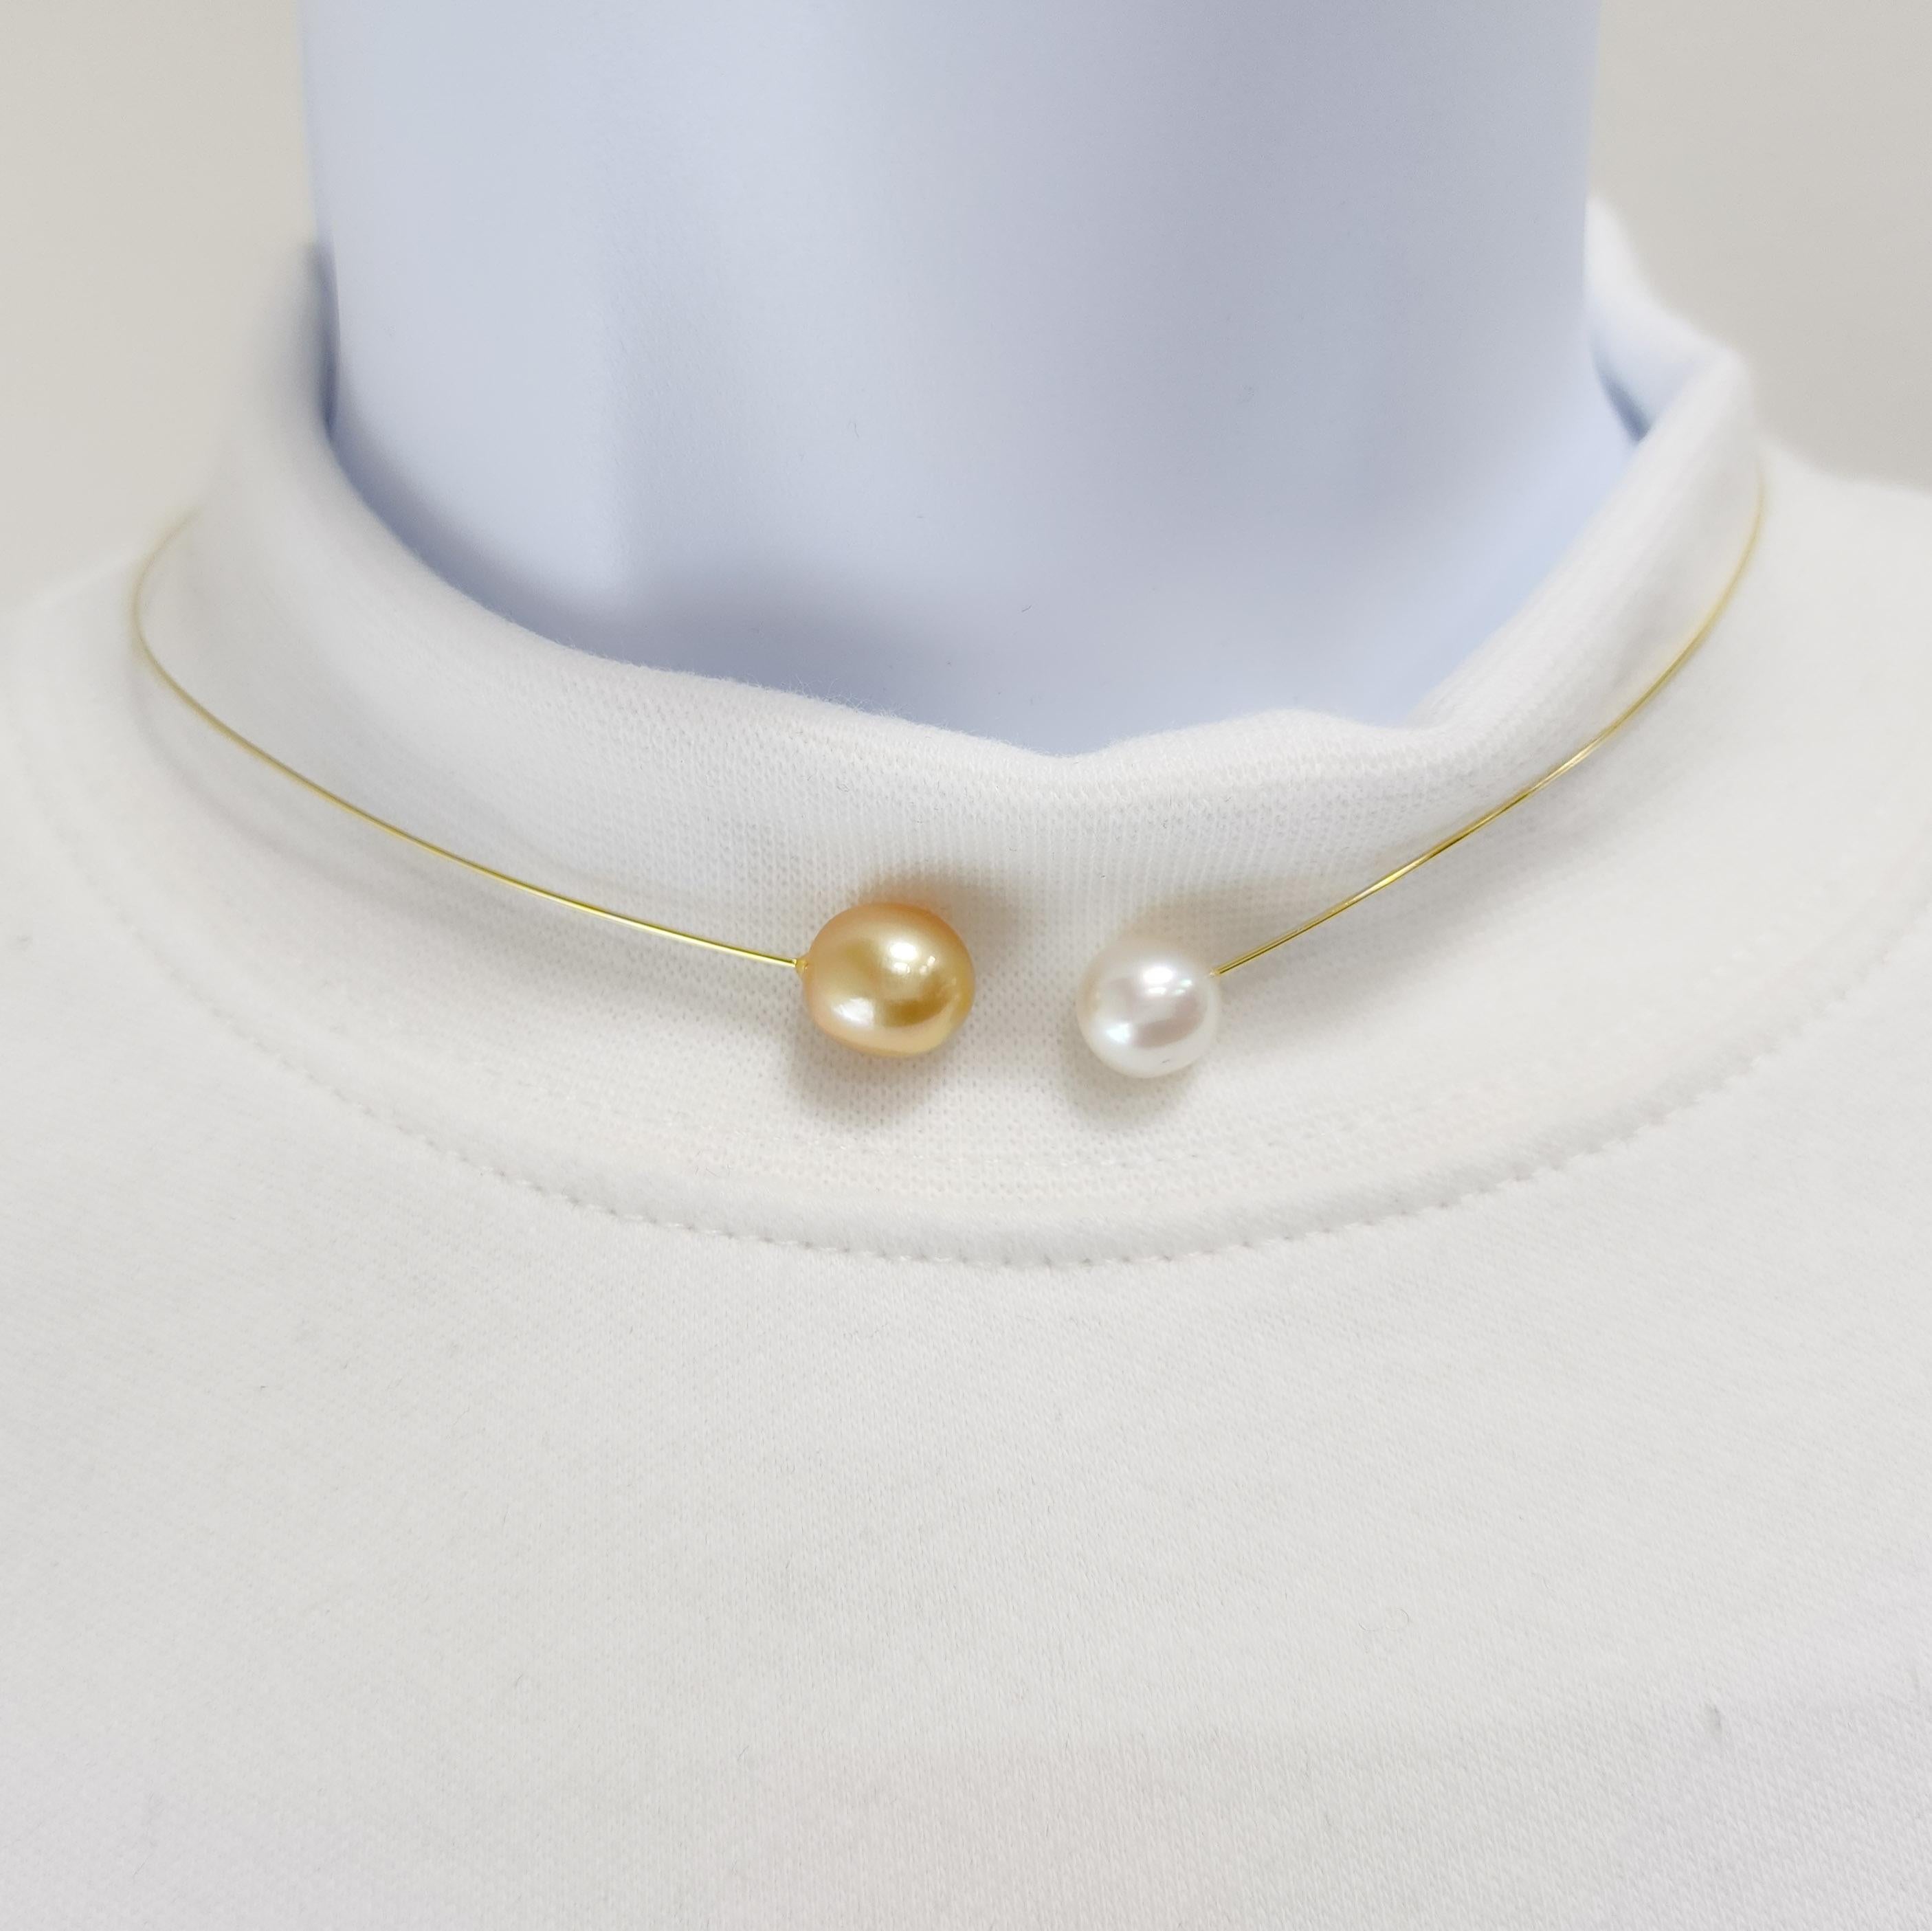 Un collier très amusant et moderne comprenant une perle dorée de 9-10 mm et une perle blanche.  Fabriqué à la main en fil d'or jaune 18 carats.  Flexible et facile à porter pour toutes les tailles de cou.